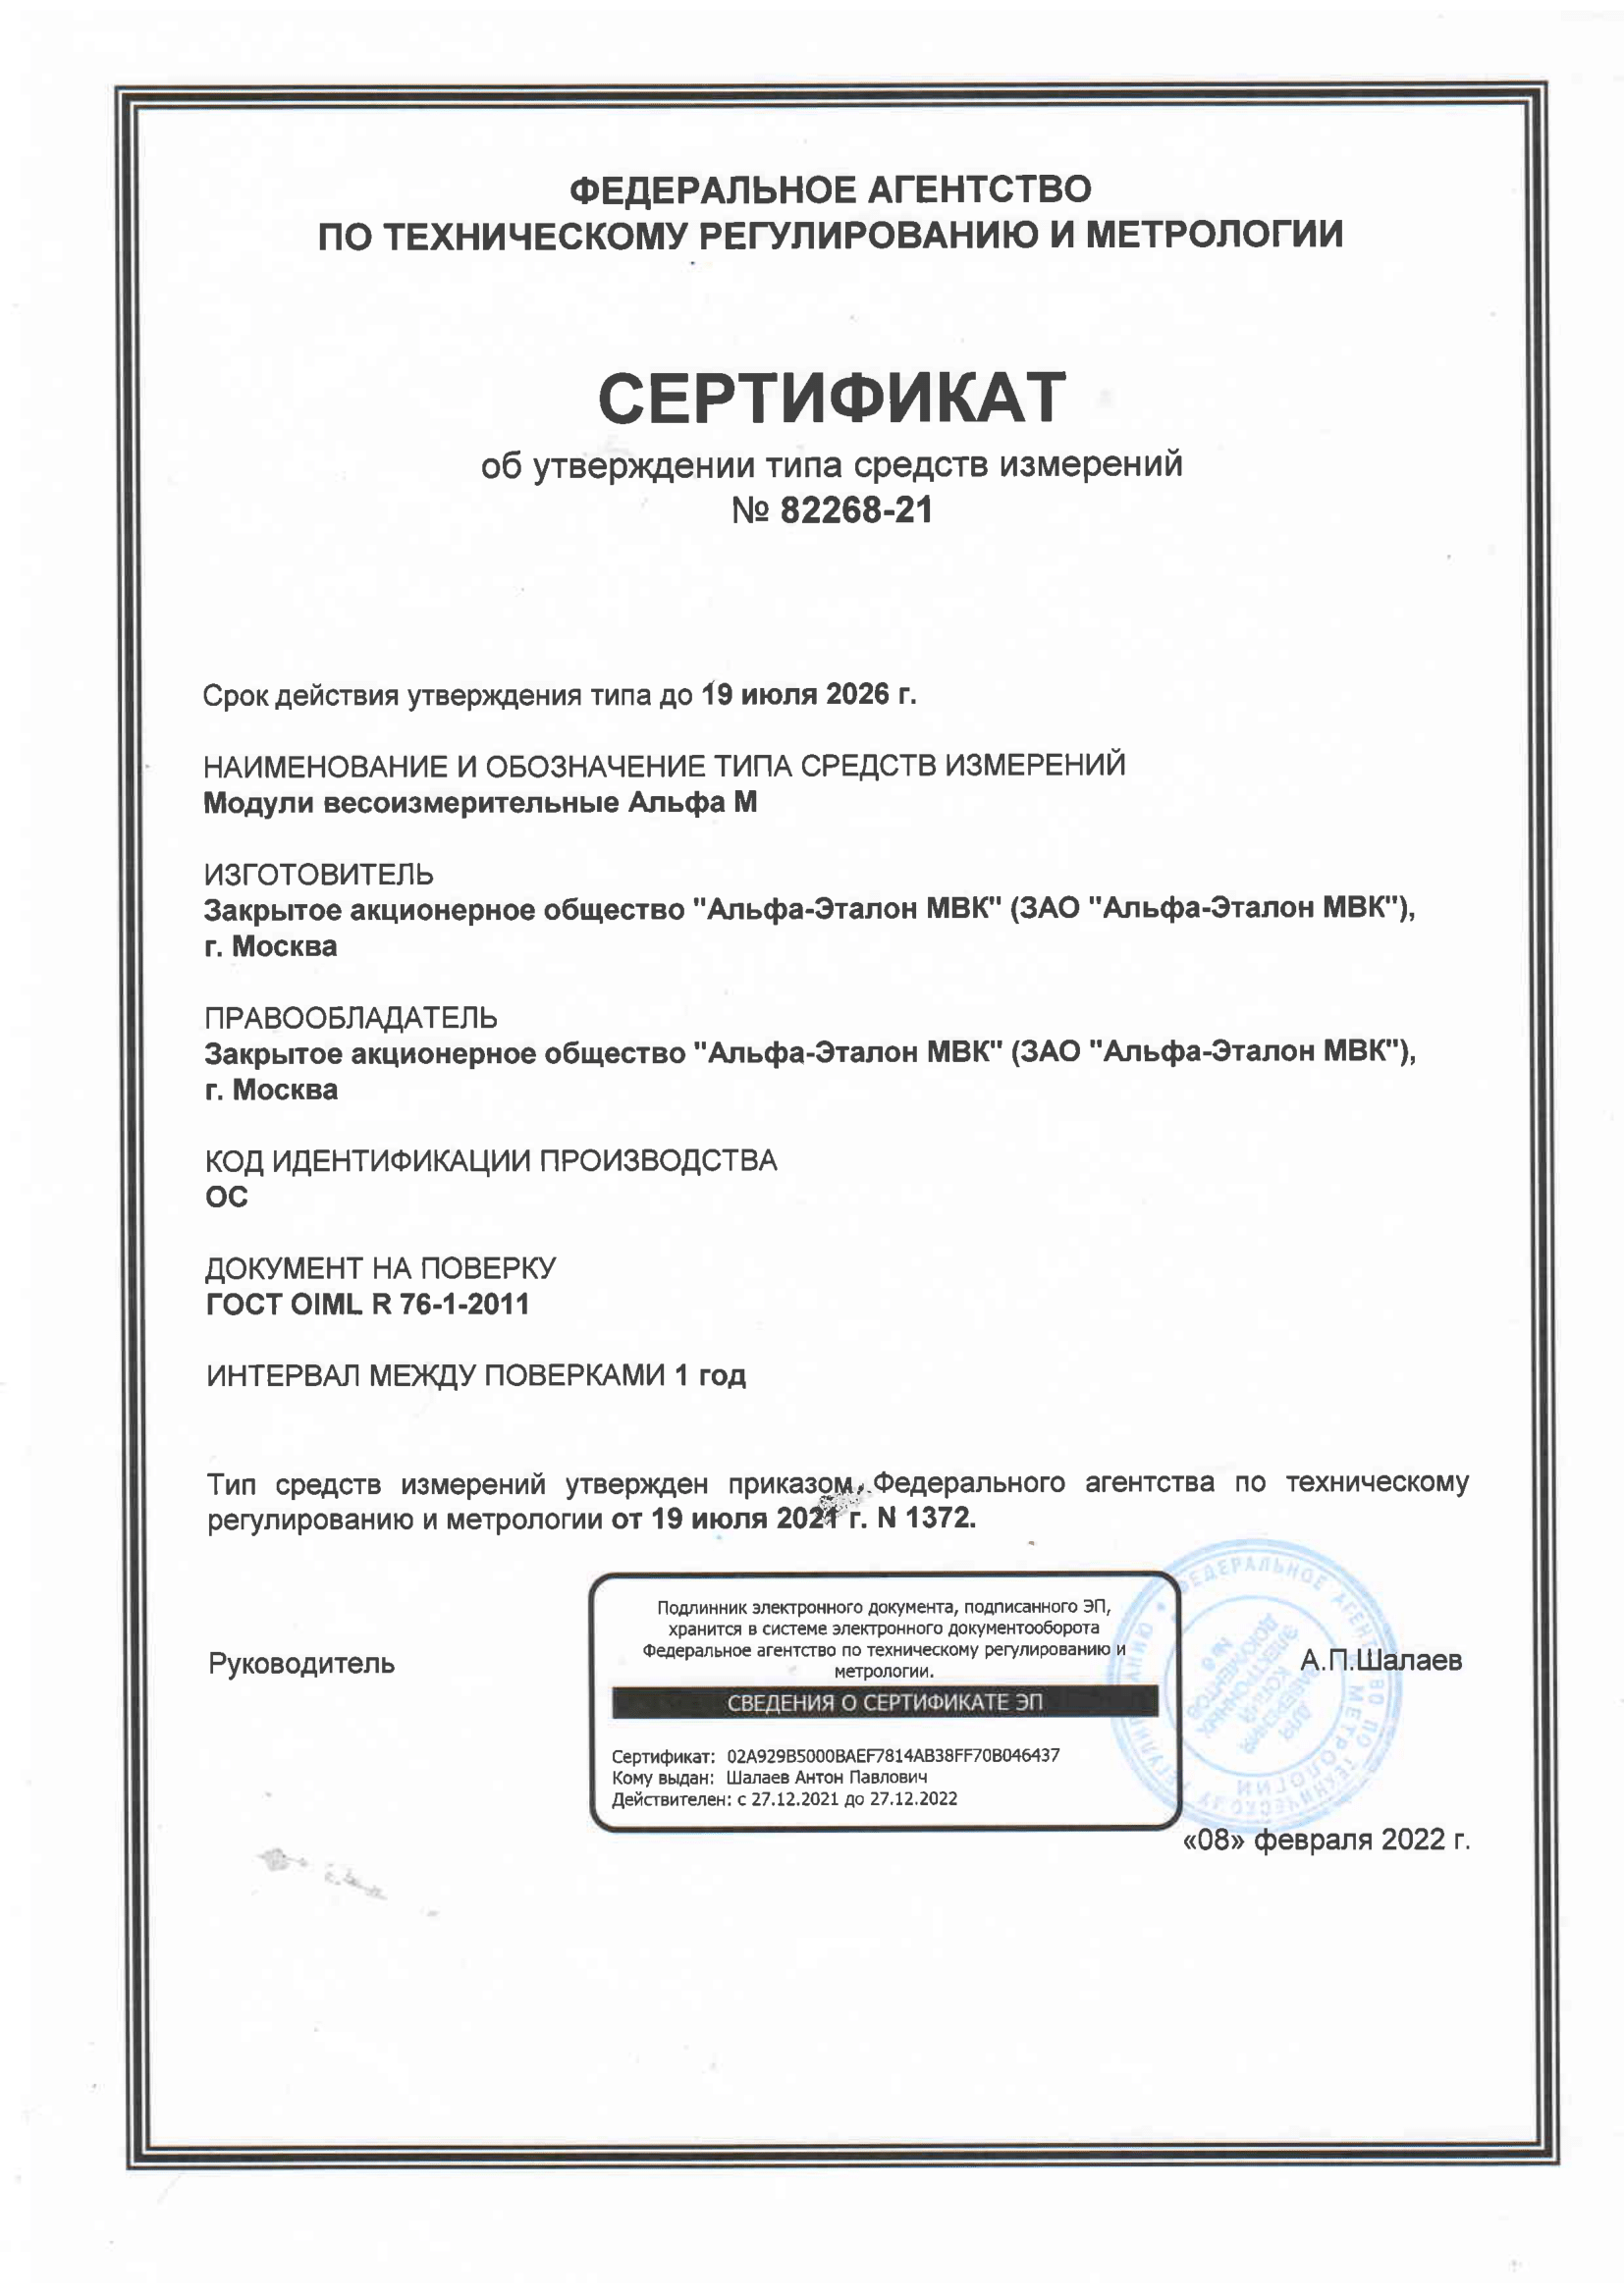 Сертификат об изменнии тиап средств